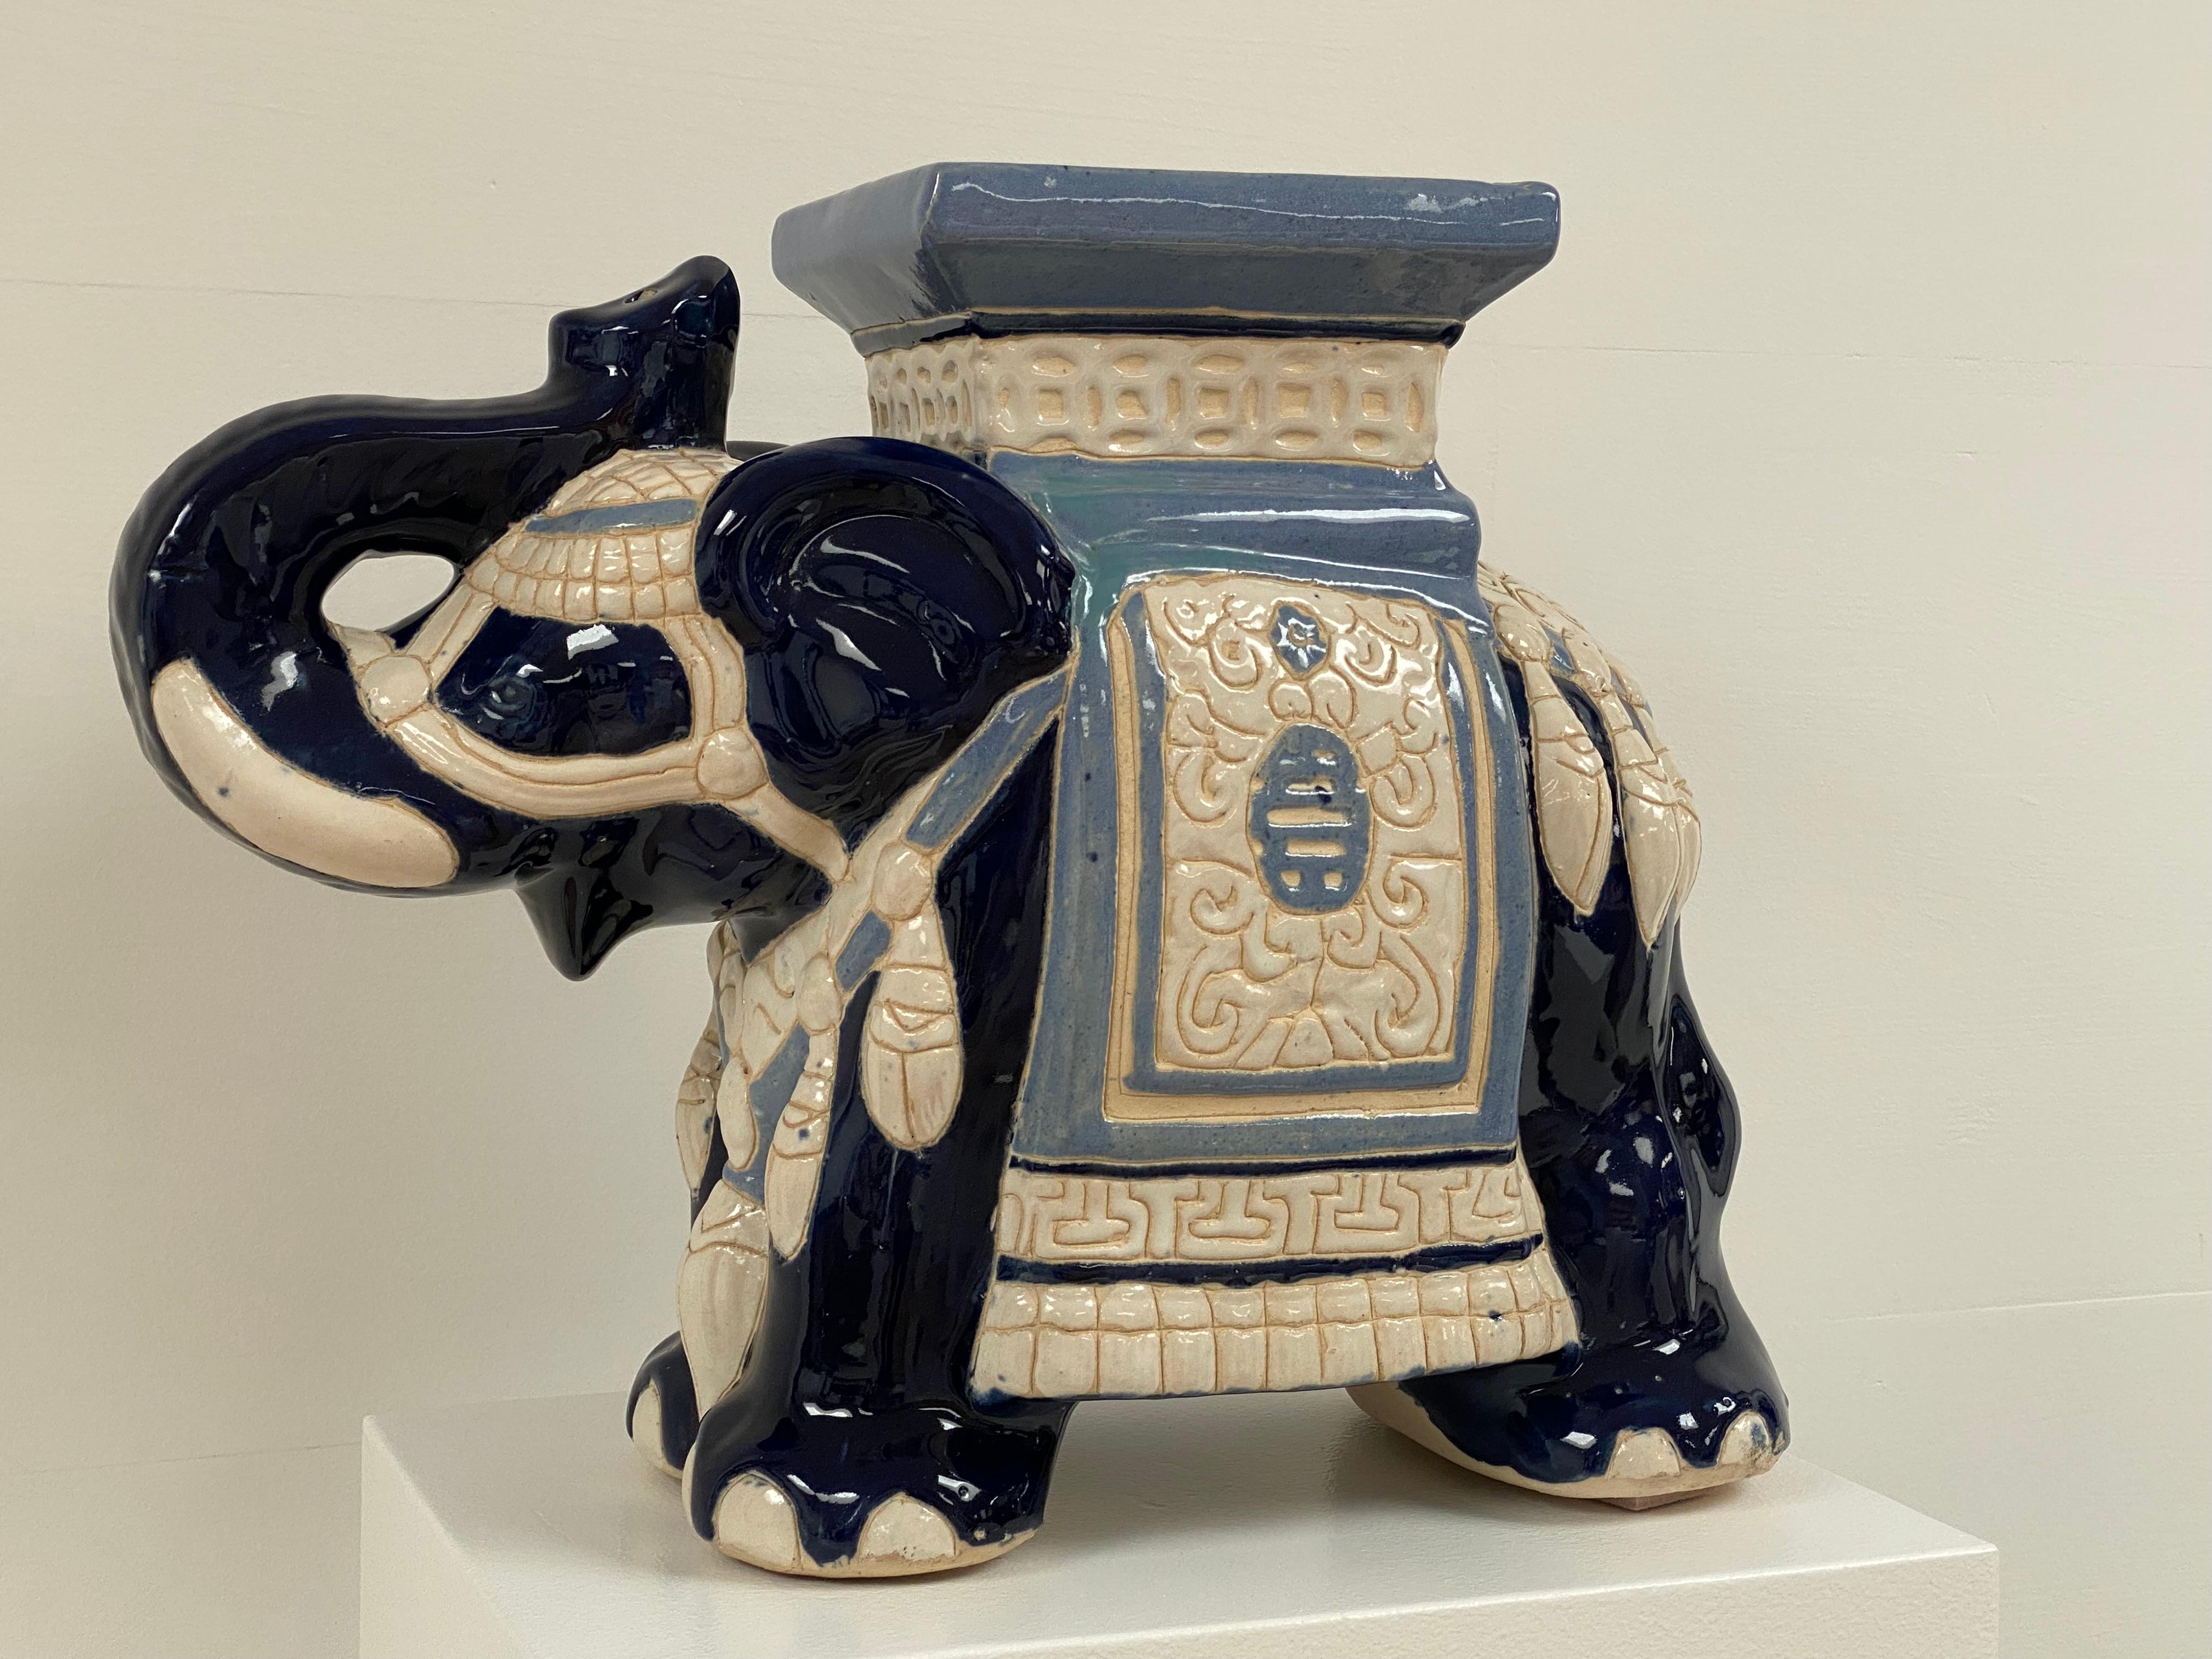 Éléphant en terre cuite très décoratif dans une variété de couleurs bleues,
Décorations orientales, peut être utilisé comme un objet décoratif ainsi que comme une table d'appoint ou un tabouret.